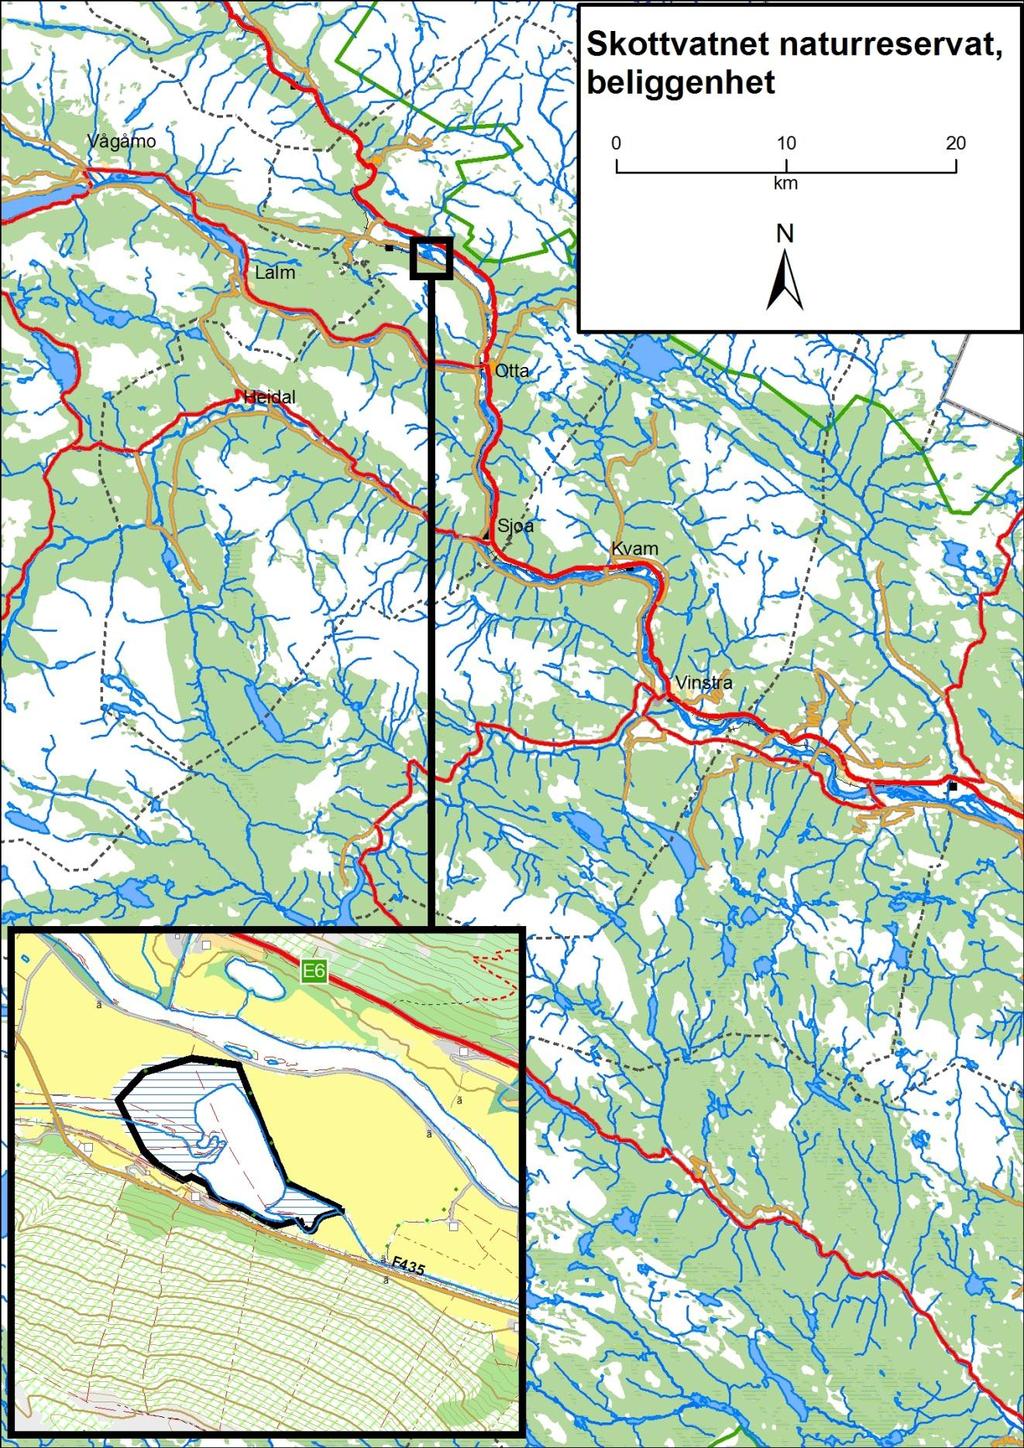 Figur 1. Skottvatnet naturreservat, beliggenhet.